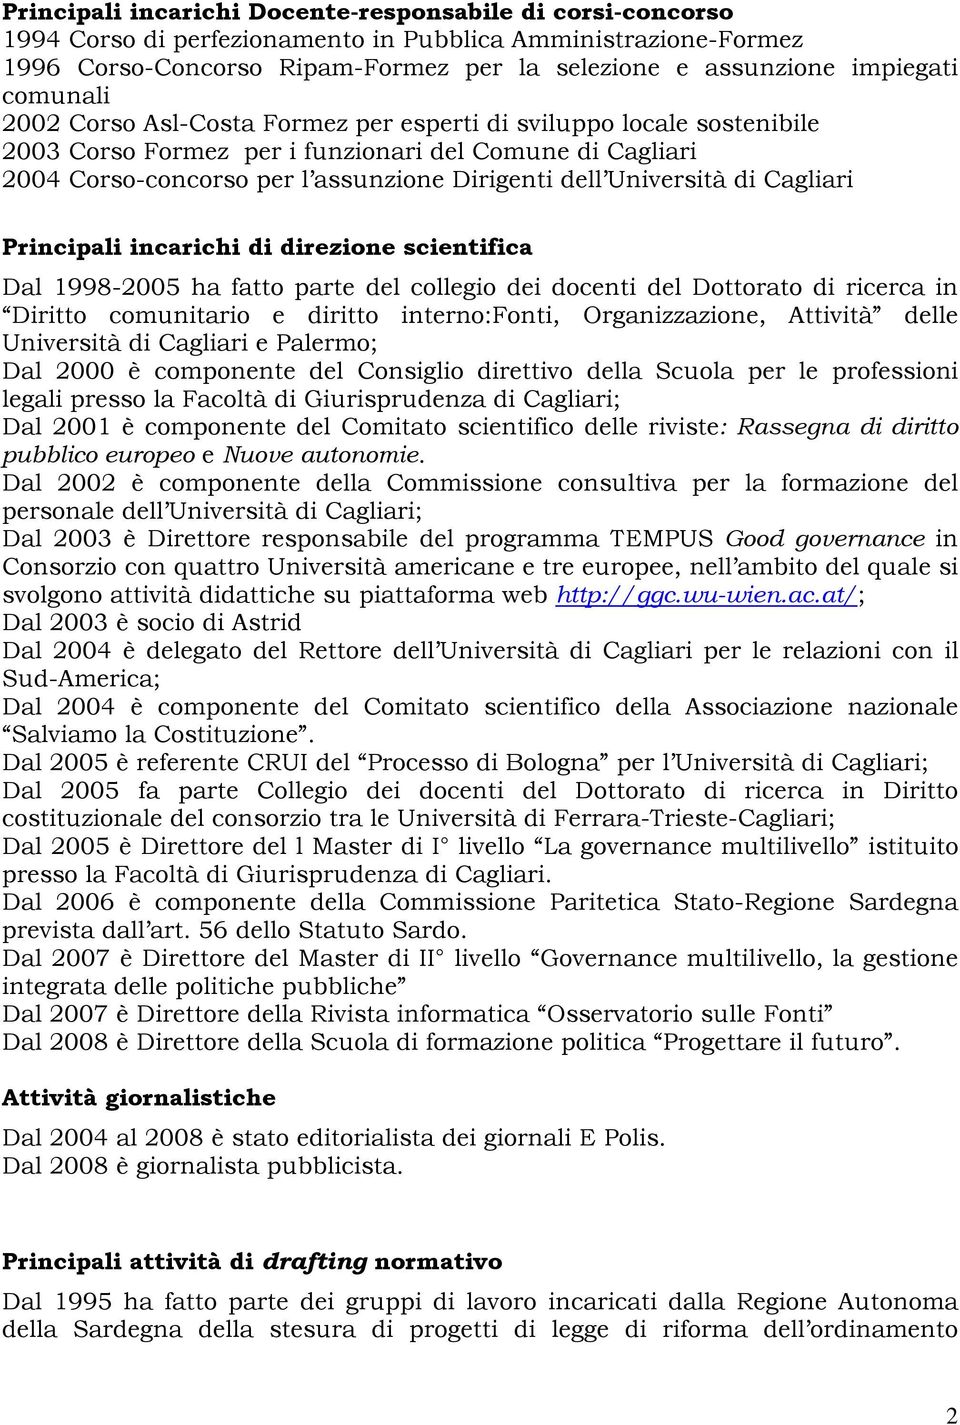 Università di Cagliari Principali incarichi di direzione scientifica Dal 1998-2005 ha fatto parte del collegio dei docenti del Dottorato di ricerca in Diritto comunitario e diritto interno:fonti,